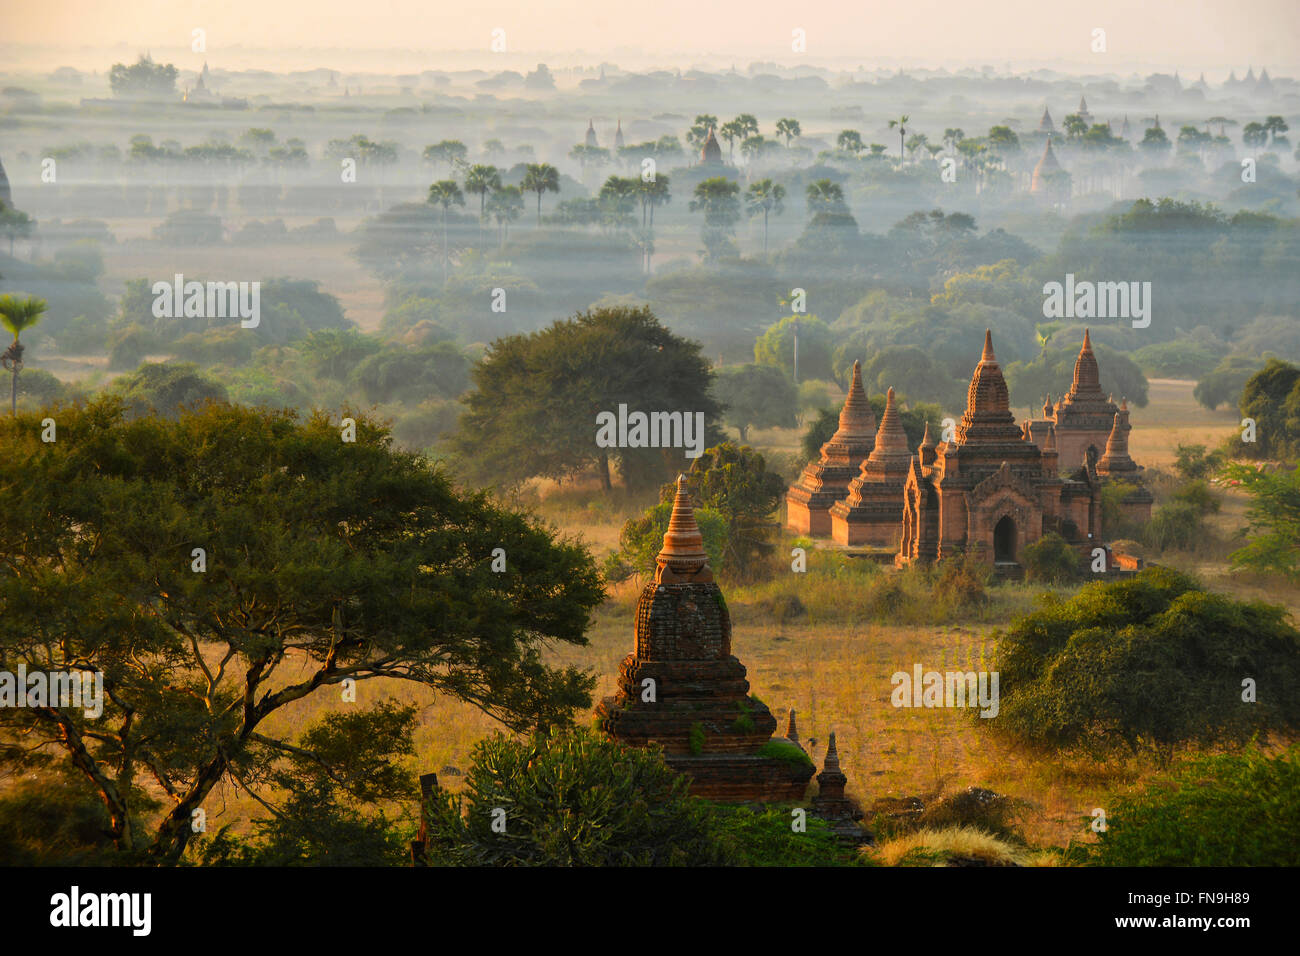 Ancient Temples in Bagan, Mandalay, Myanmar Stock Photo